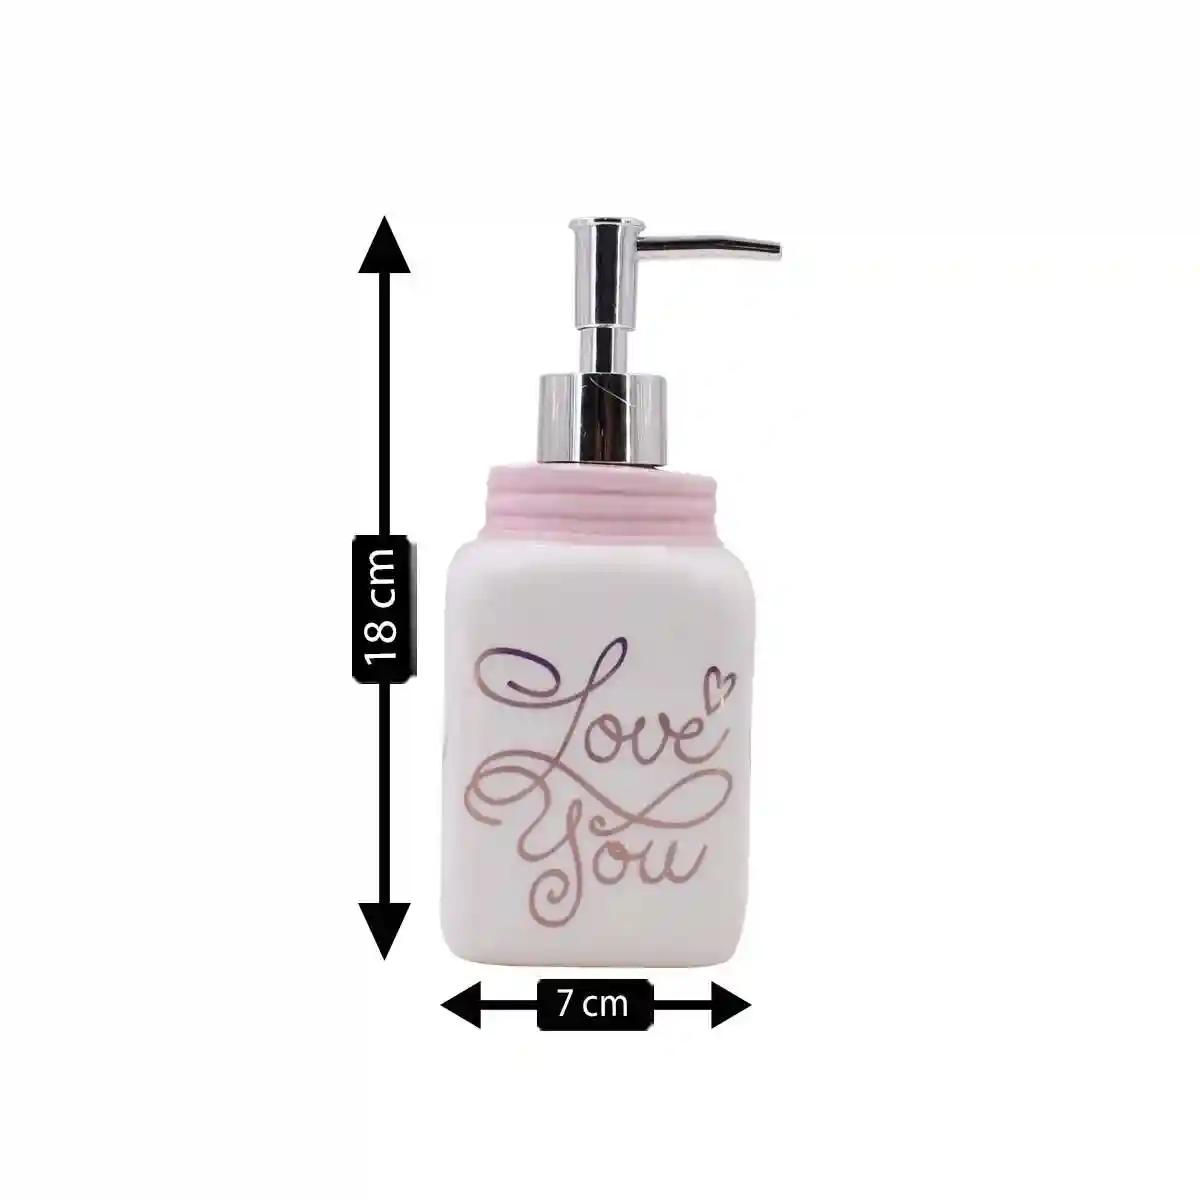 Kookee Ceramic Soap Dispenser for Bathroom handwash, refillable pump bottle for Kitchen hand wash basin, Set of 2 - Off-White (9652)